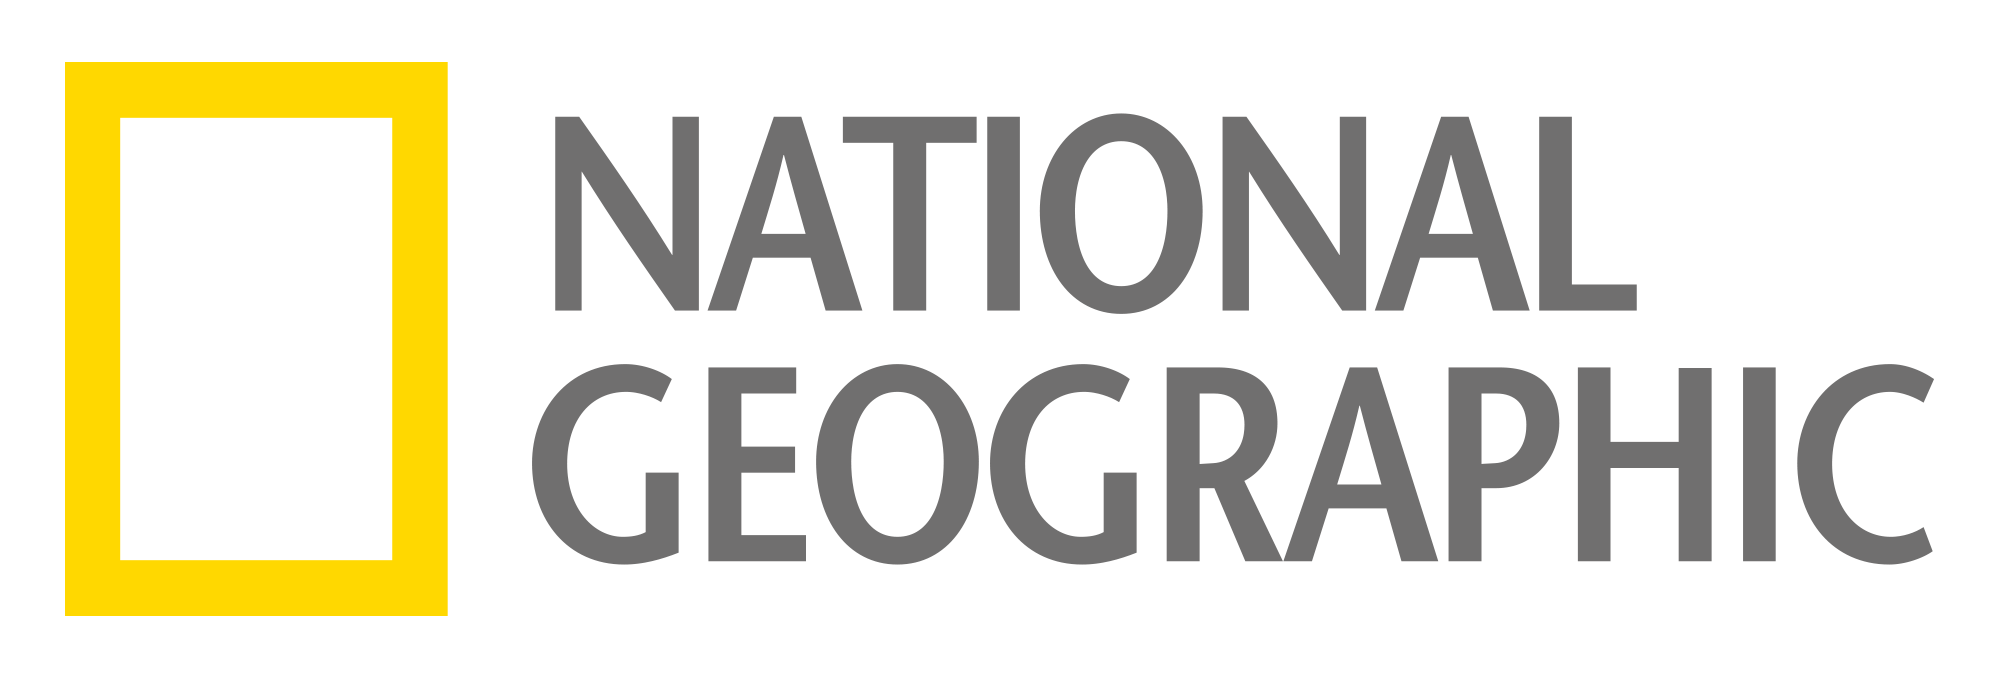 national-geographic-logo-png-ng-logo-gray-png-2000.png